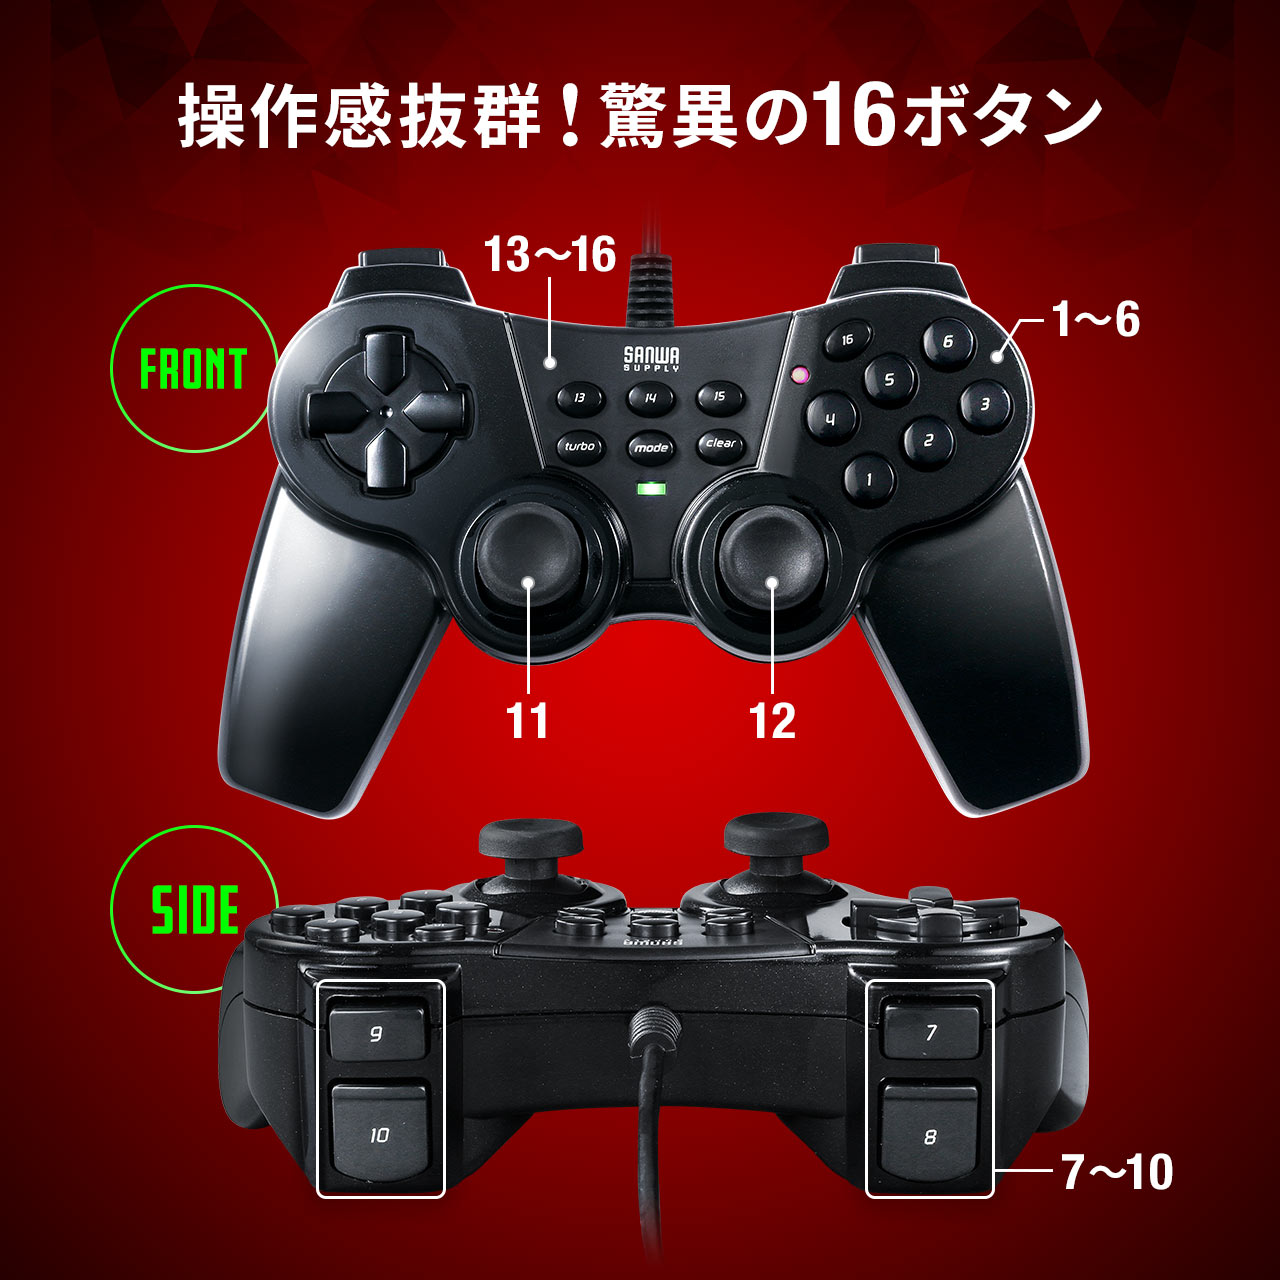 【12月の特別価格】16ボタン USBゲームパッド 全ボタン連射対応 アナログ デジタル Xinput対応 振動機能つき 日本製高耐久シリコンラバー使用 Windows専用 400-JYP62UBKX